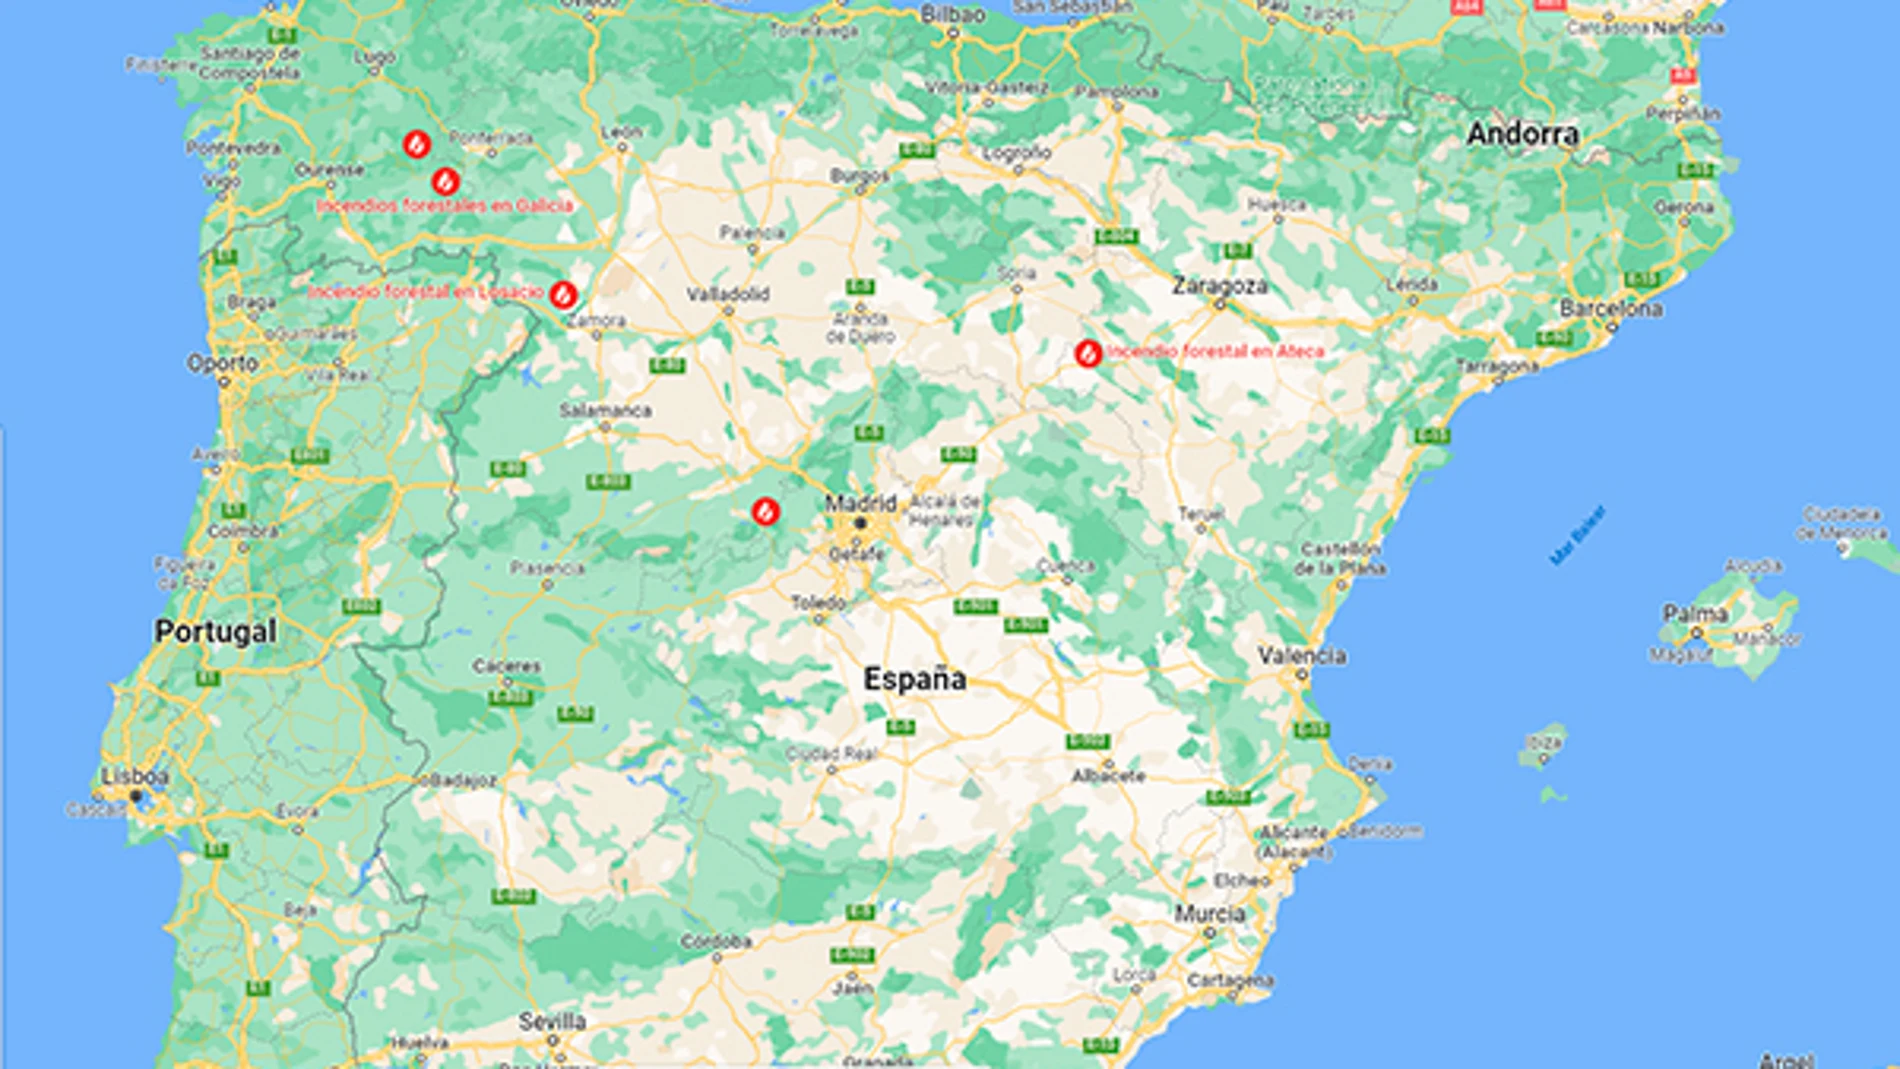 Los incendios forestales que Google Maps muestra hoy, 20 de julio.